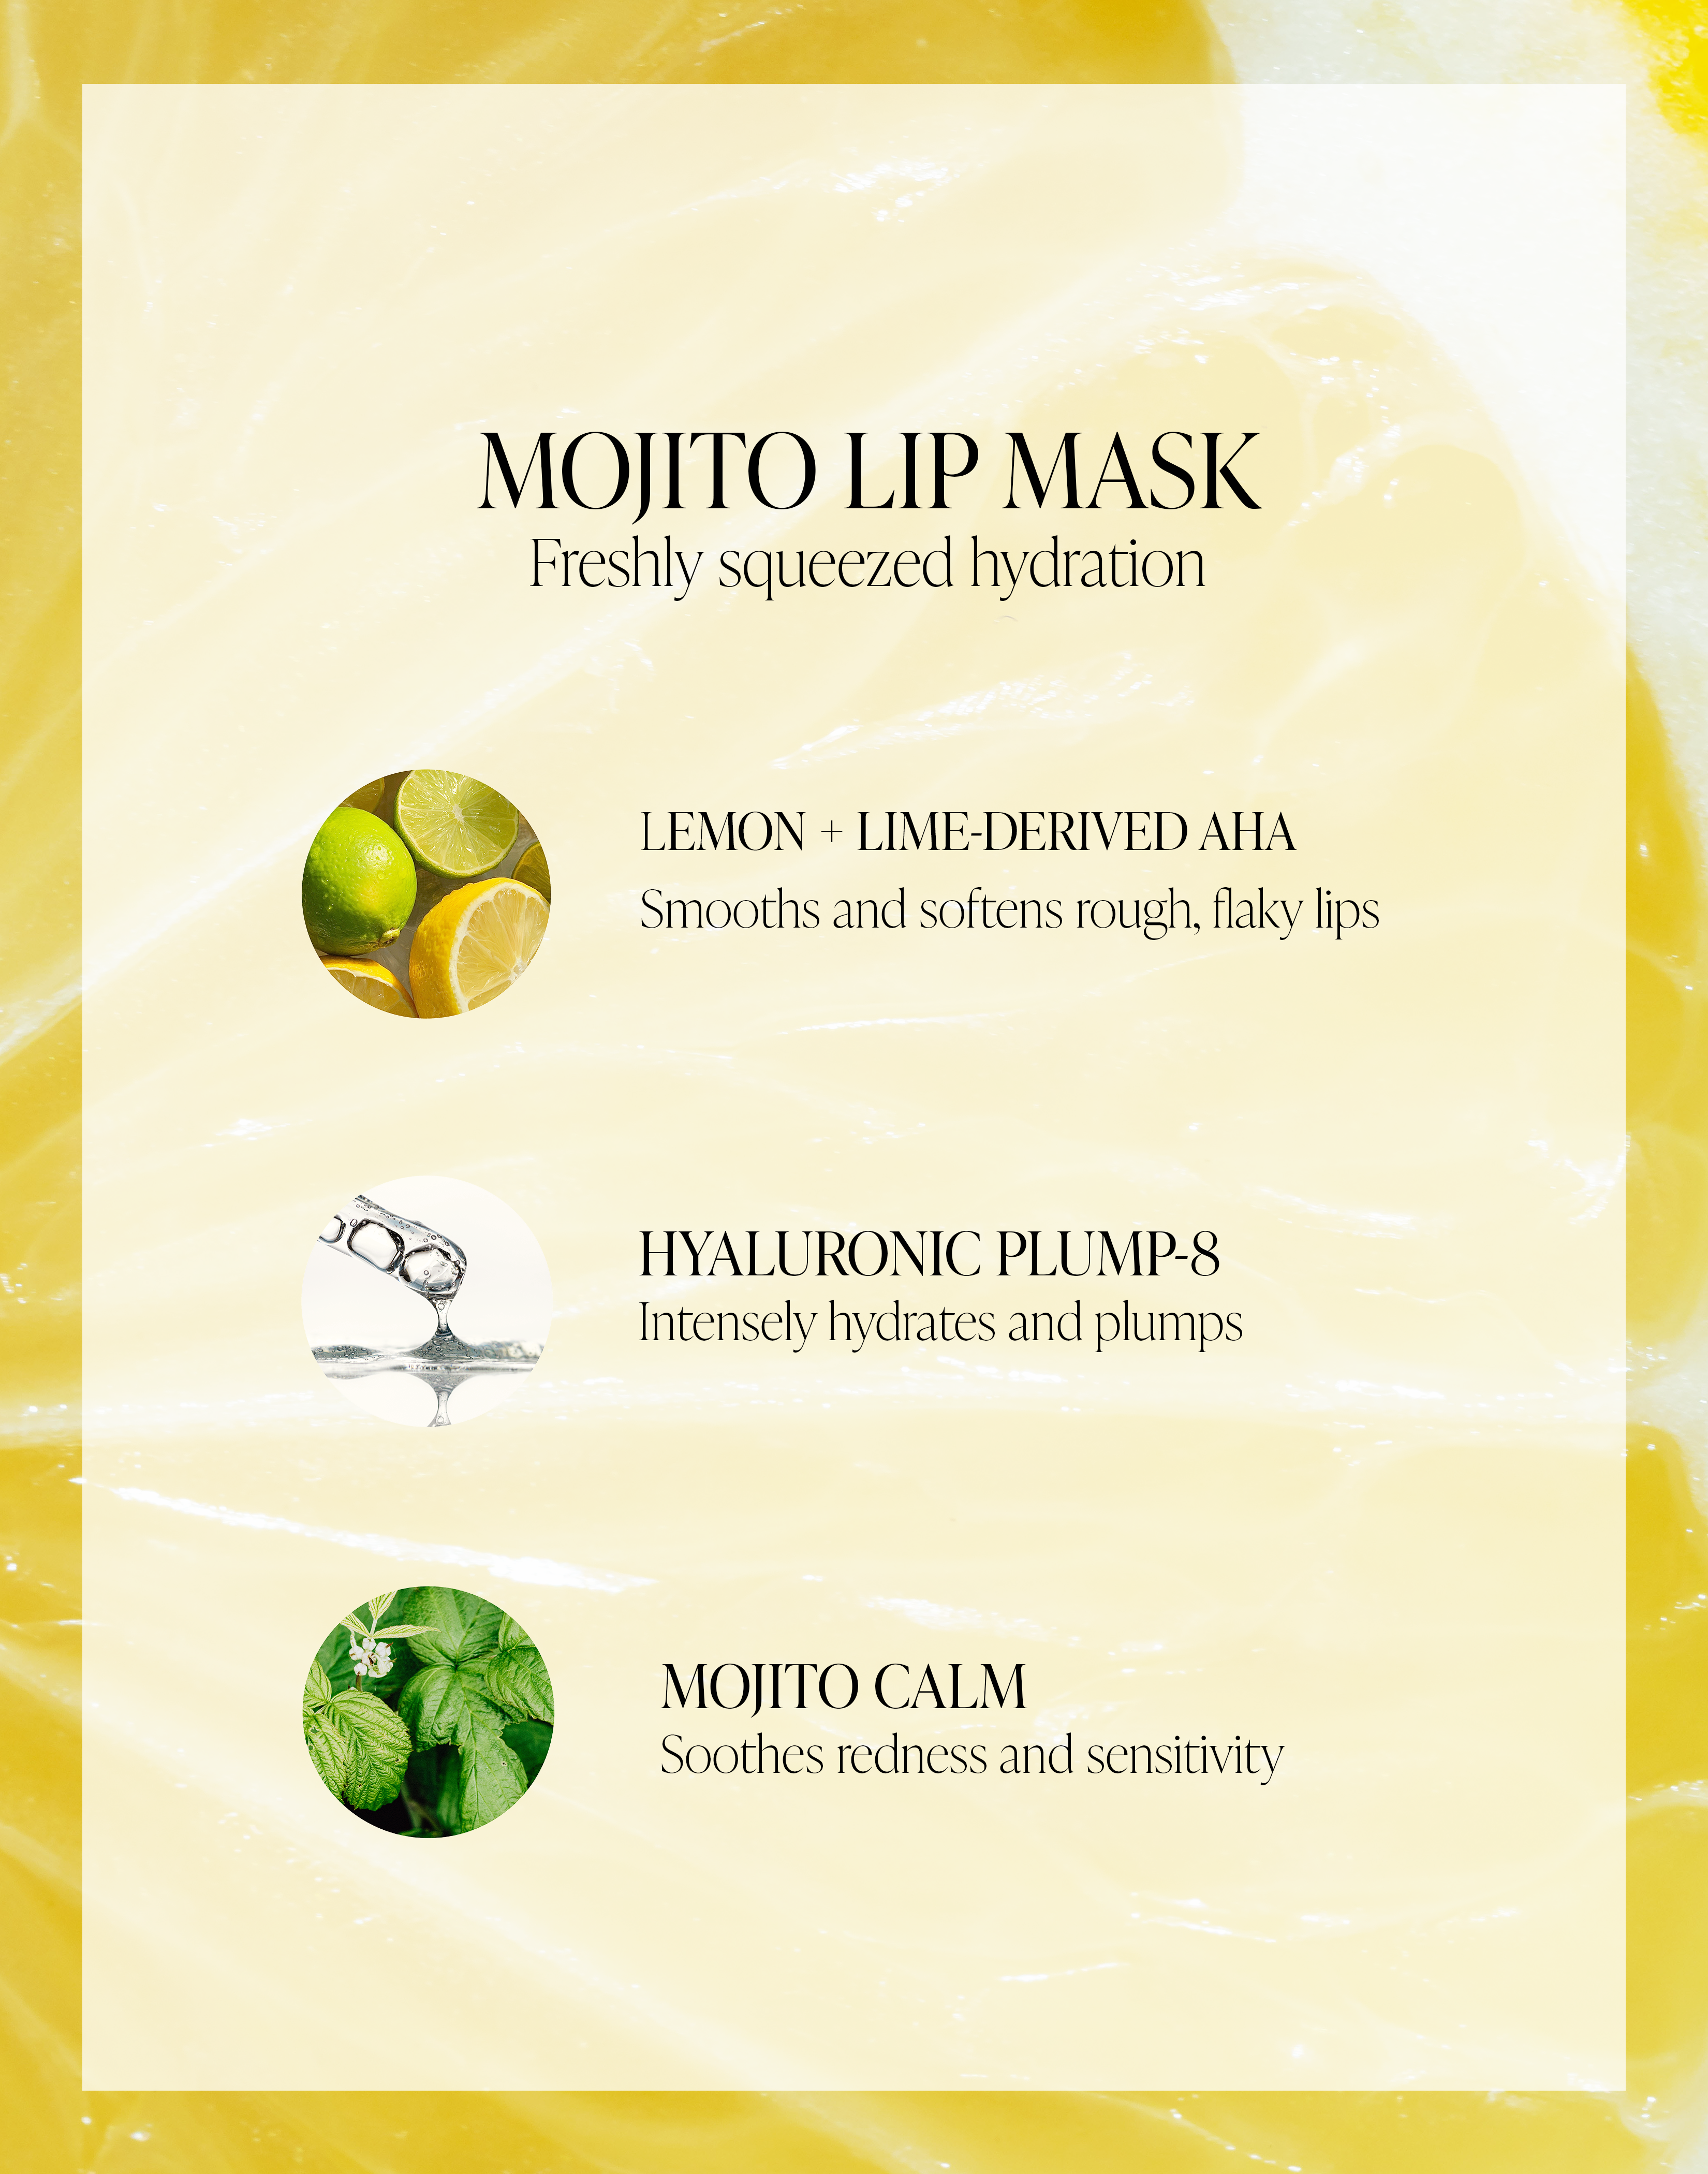 Mojito Lip Mask